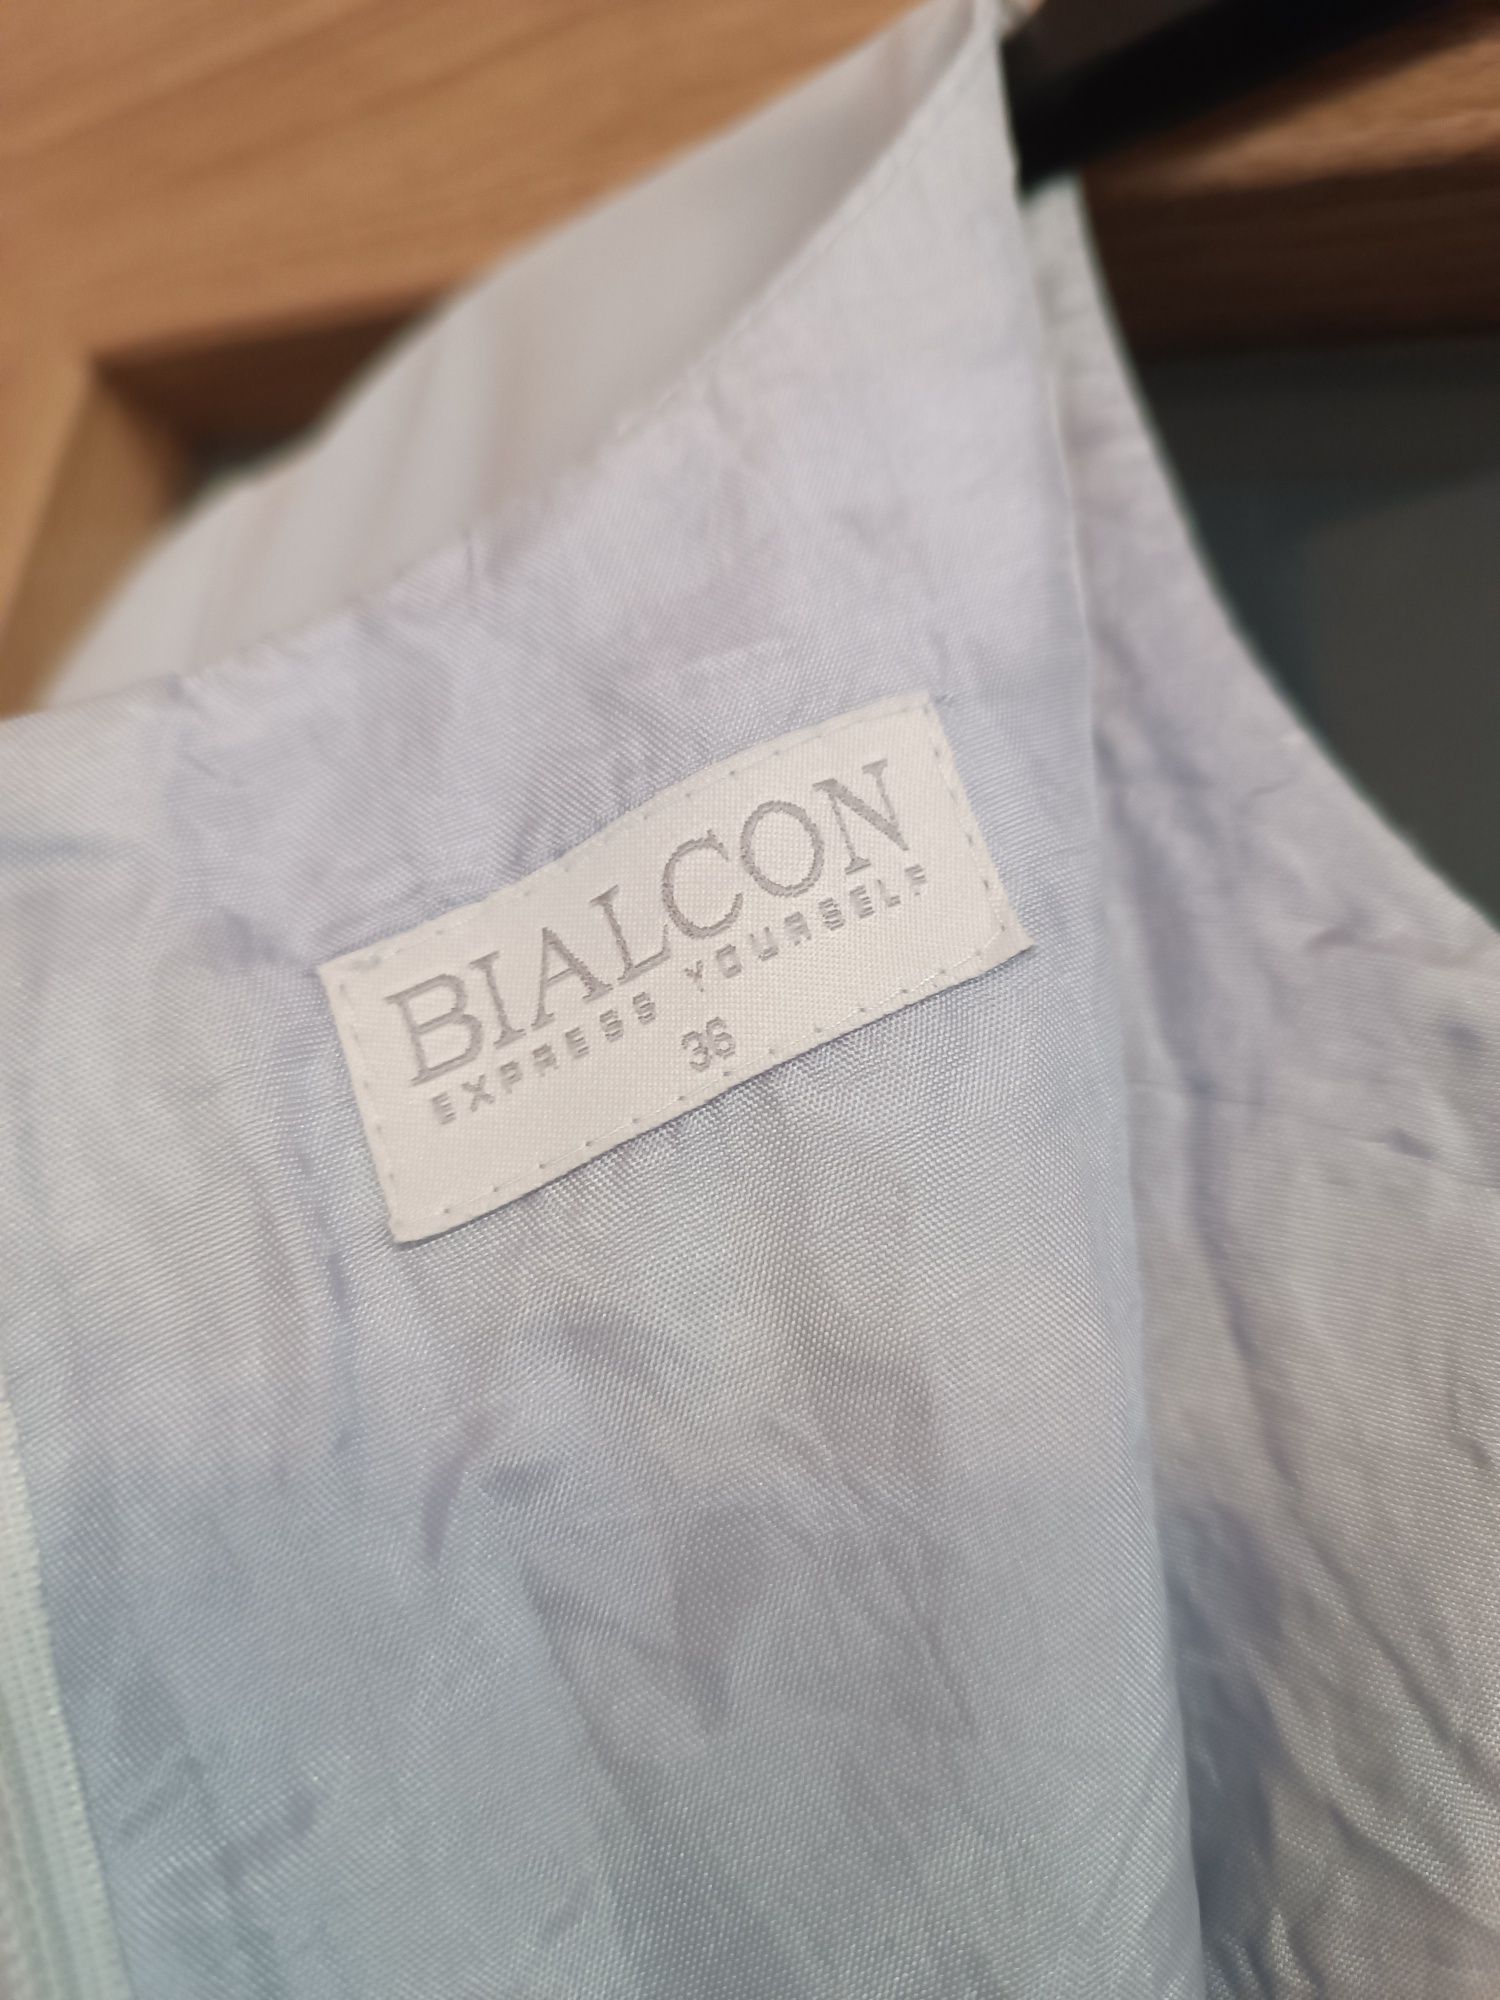 Sukienka Bialcon, rozmiar 36